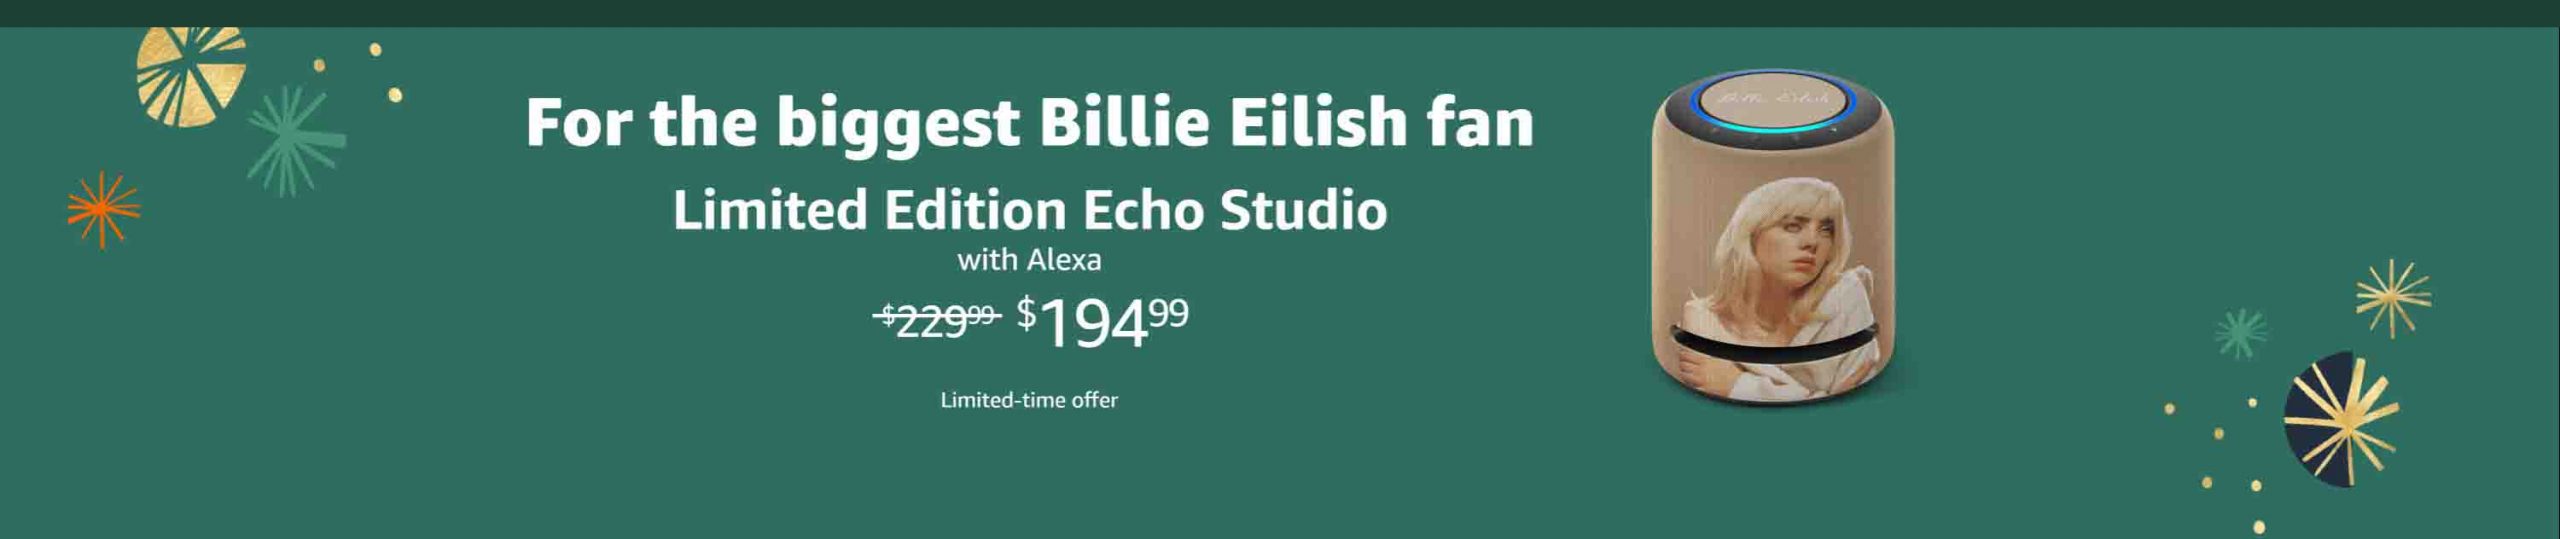 Billie Eilish Limited Edition - Echo Studio